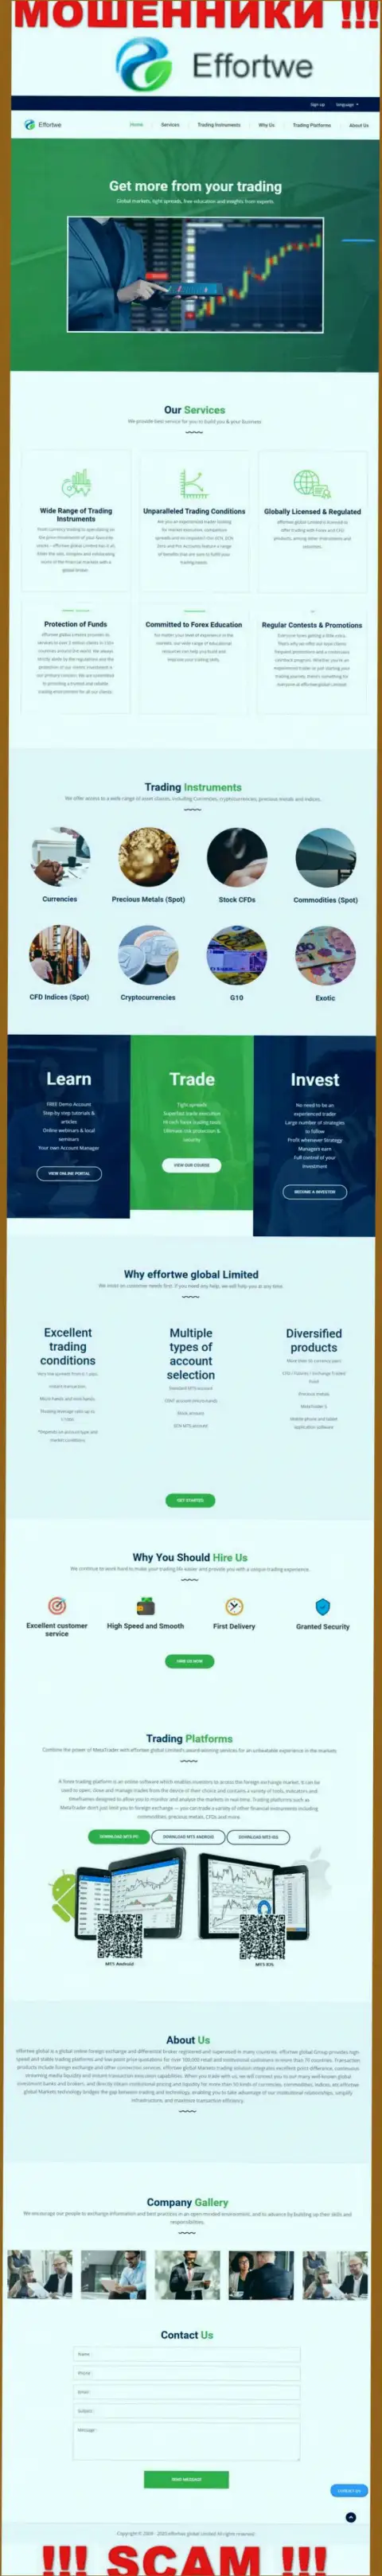 Сайт конторы Effortwe Global Limited, заполненный ложной информацией